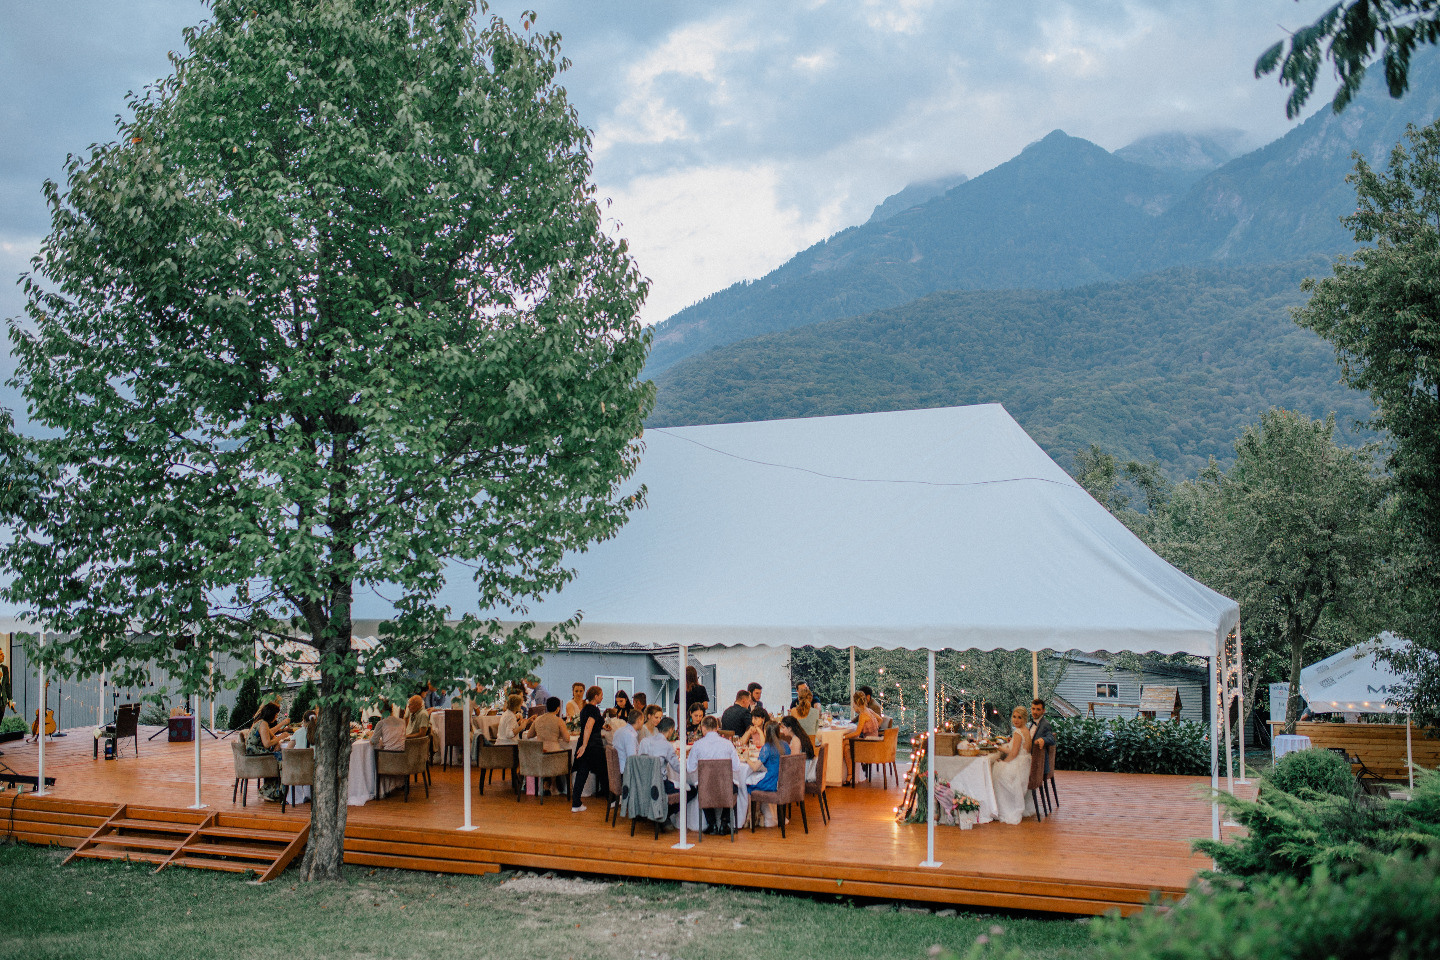 ФОТО ИЗ СТАТЬИ: Уютная свадьба в горах на свежем воздухе